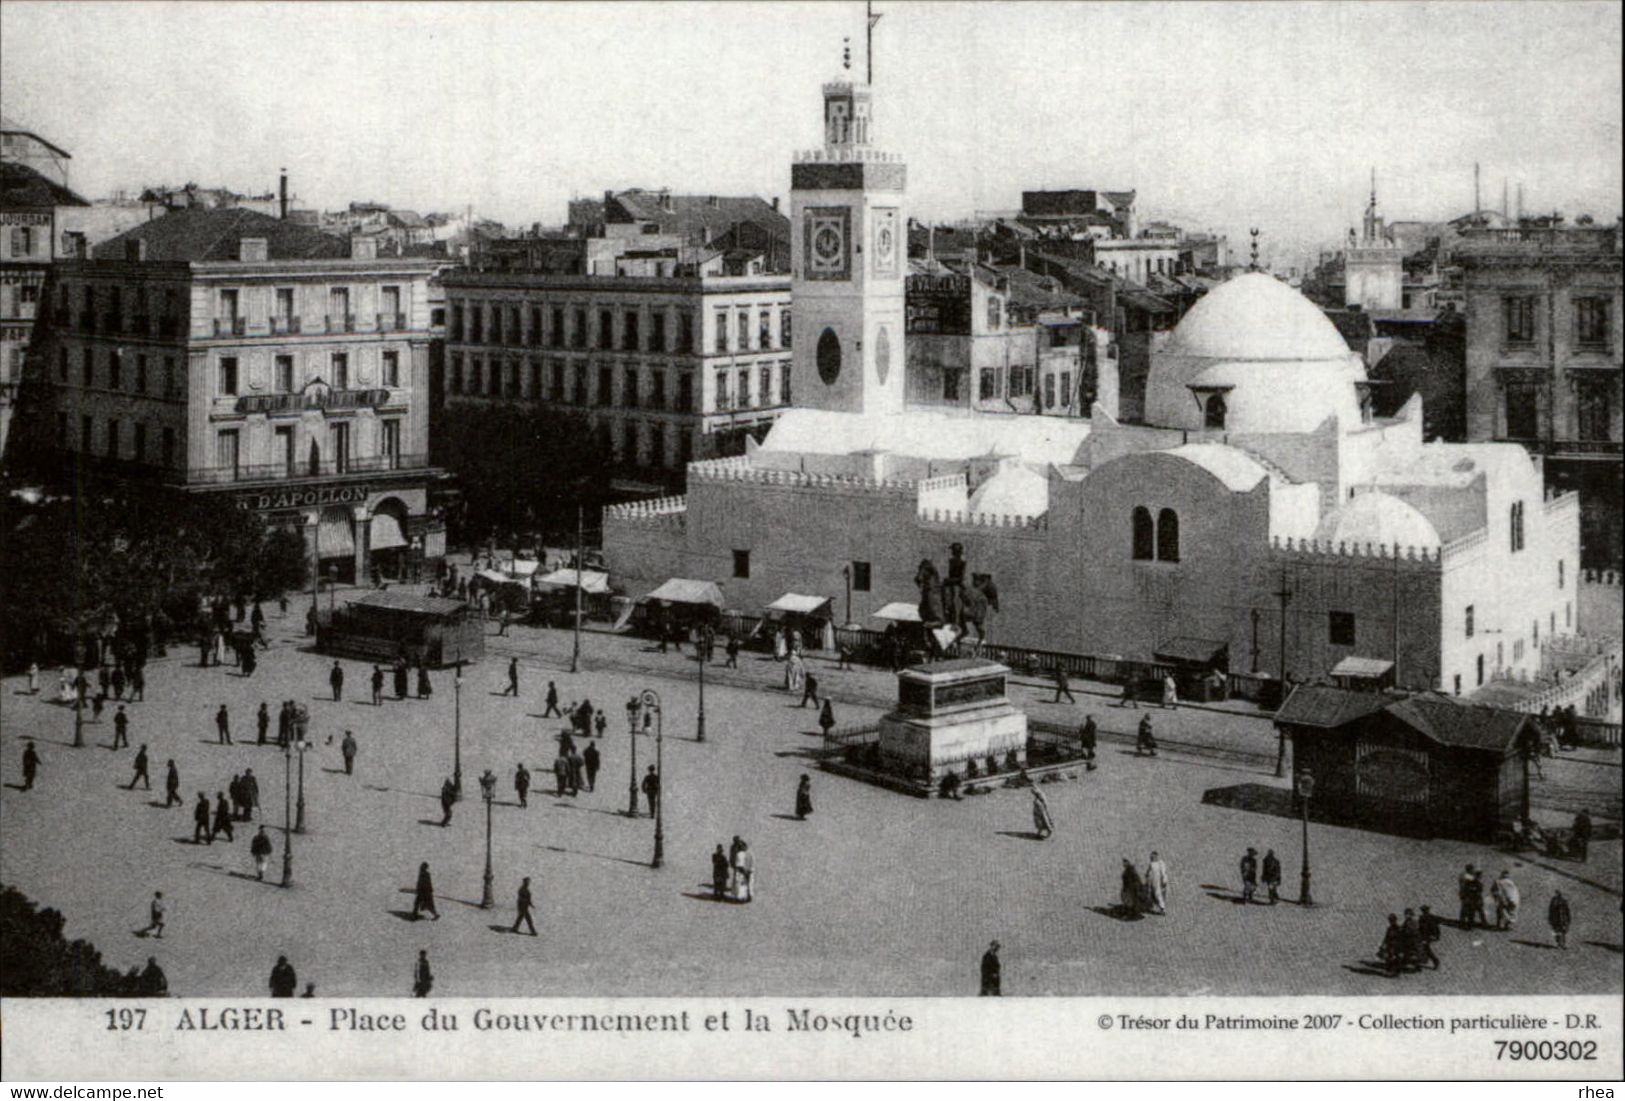 ALGERIE - 10 Reproductions de cartes anciennes - Batna, Sidi bel Abbes, Alger, Guelma, Mostaganem, Skikkda, Oran